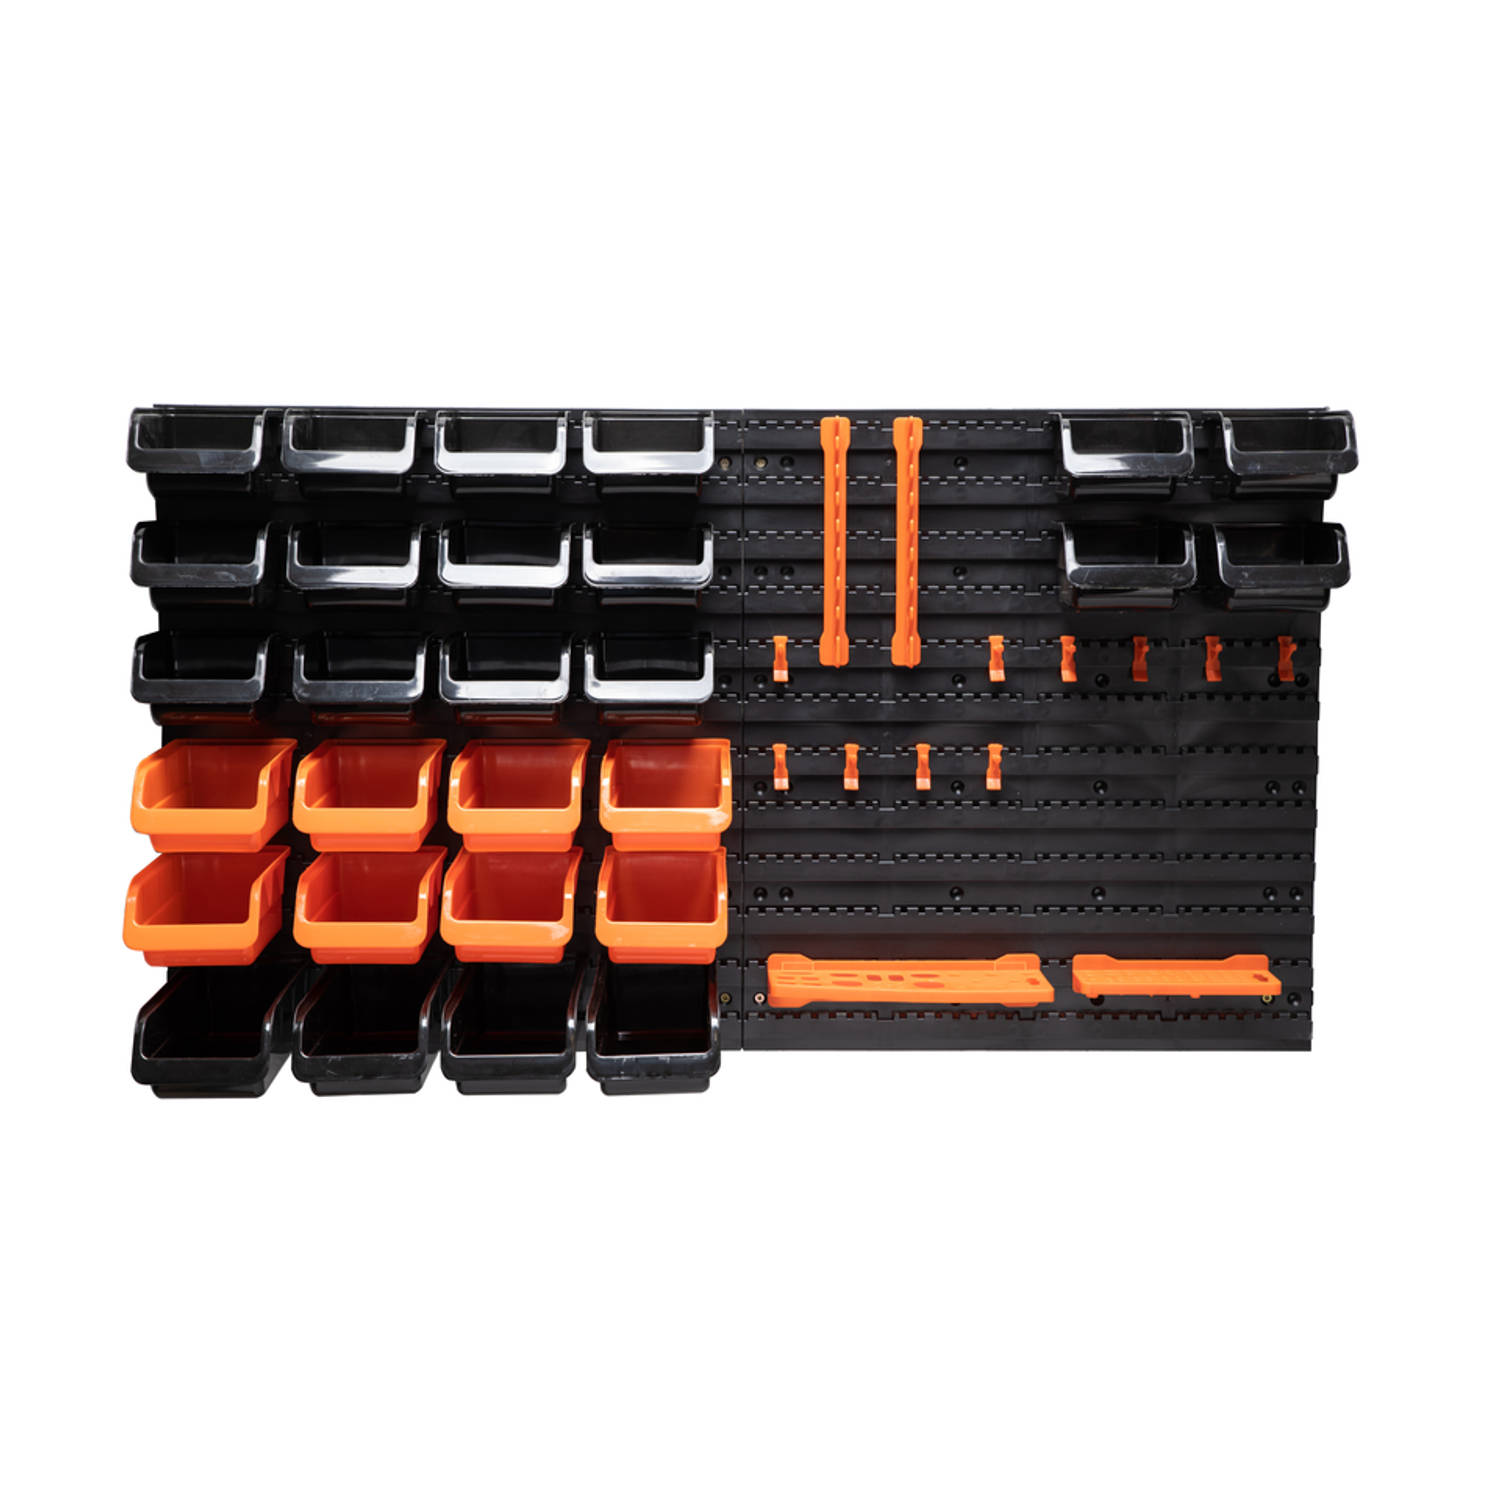 BLACK+DECKER Gereedschapsbord met Opbergbakjes en Hangers - 98 x 23 x 43 CM - 43 Onderdelen - Gereedschapswand